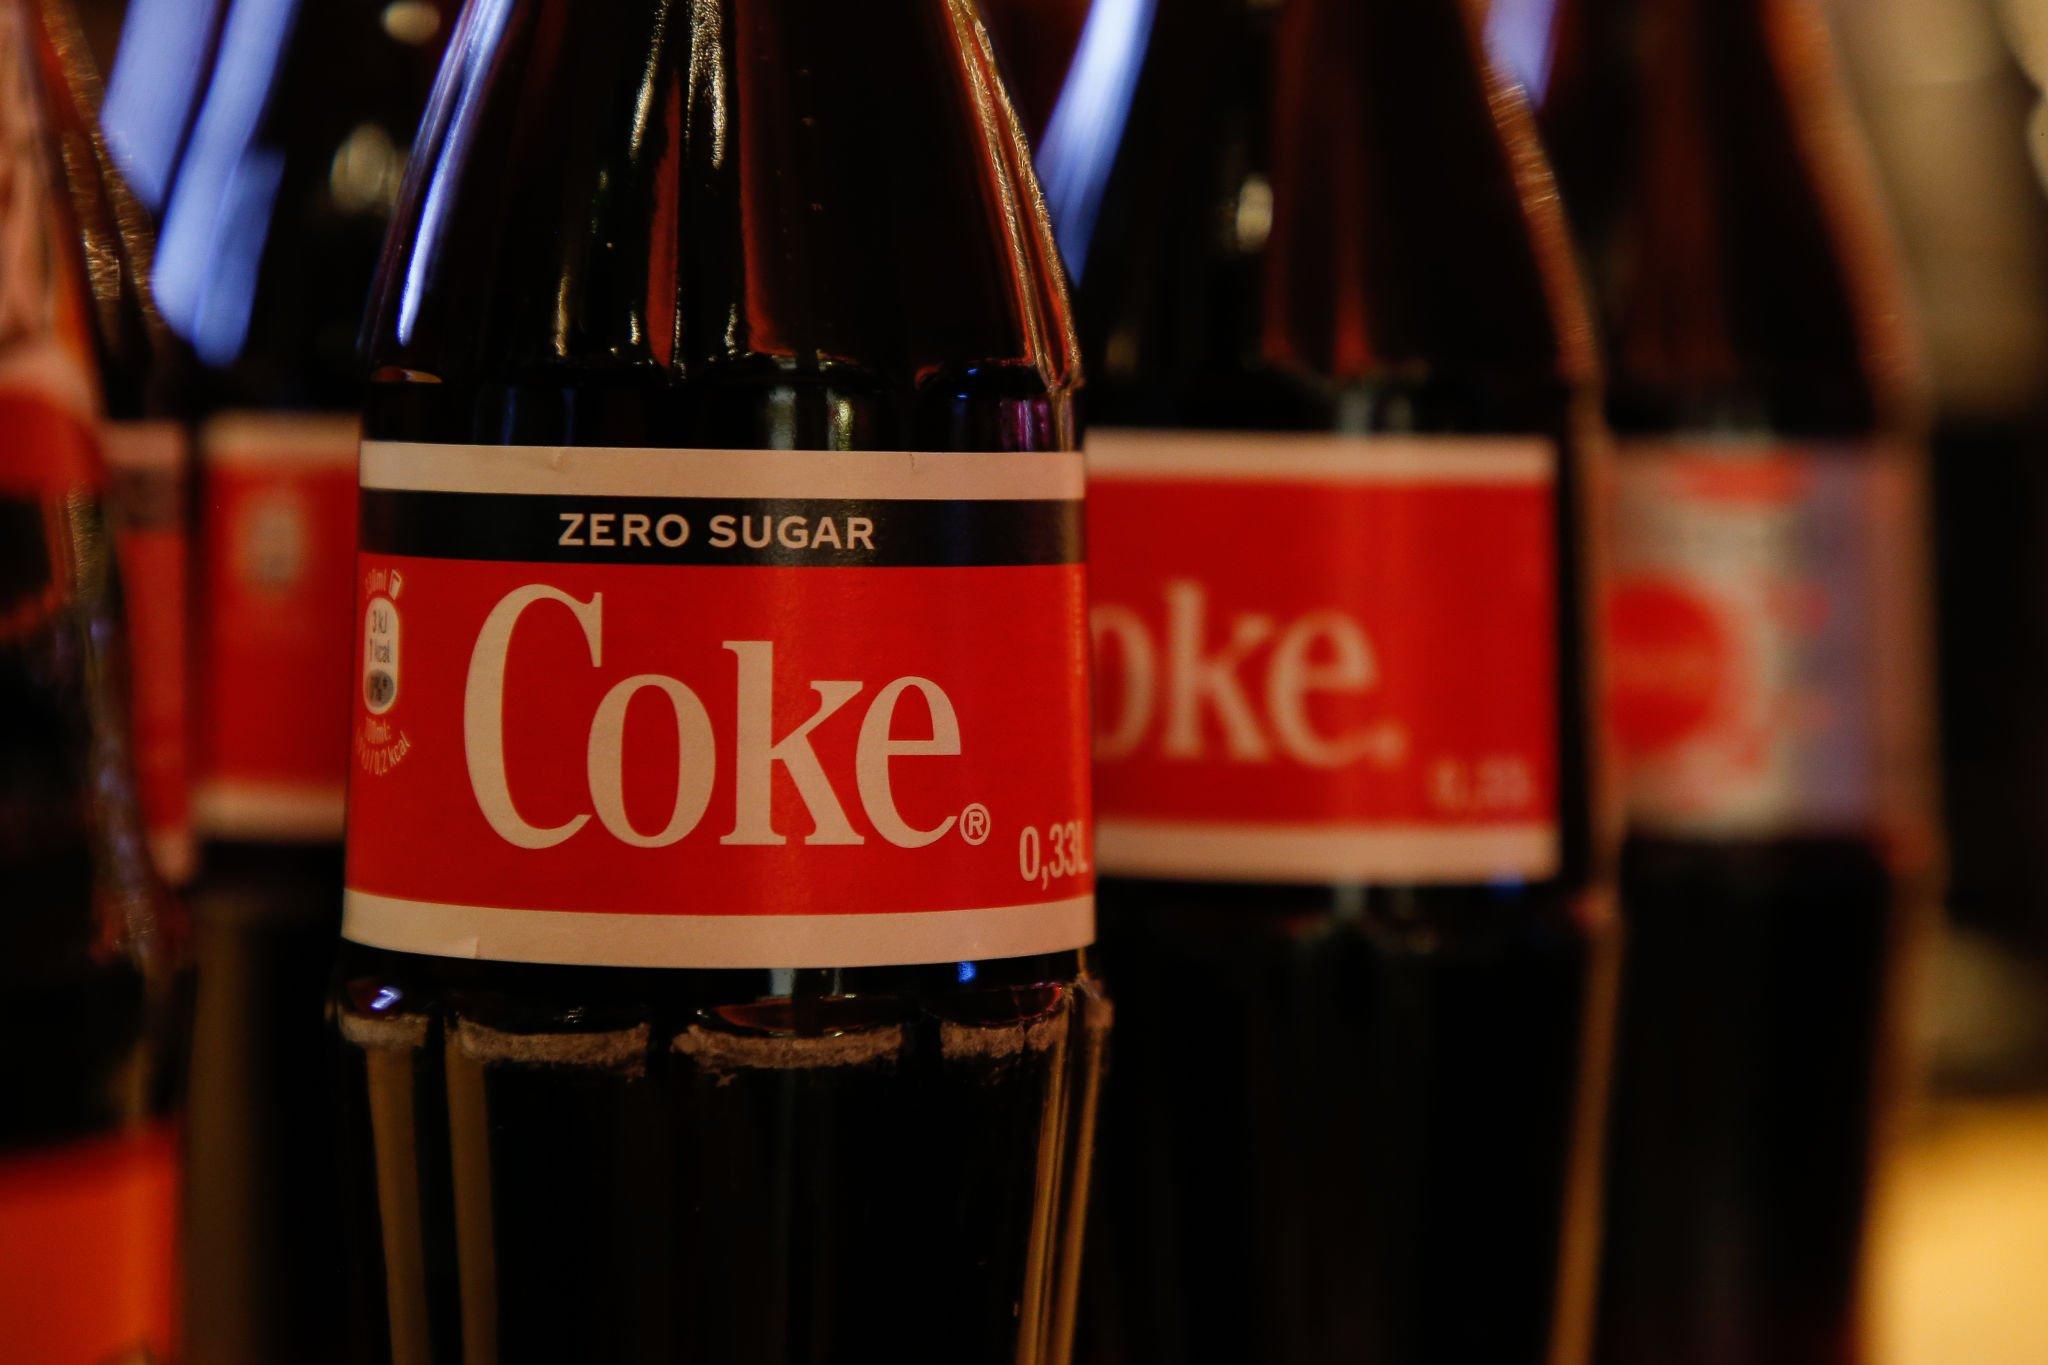 coke zero with zero sugar